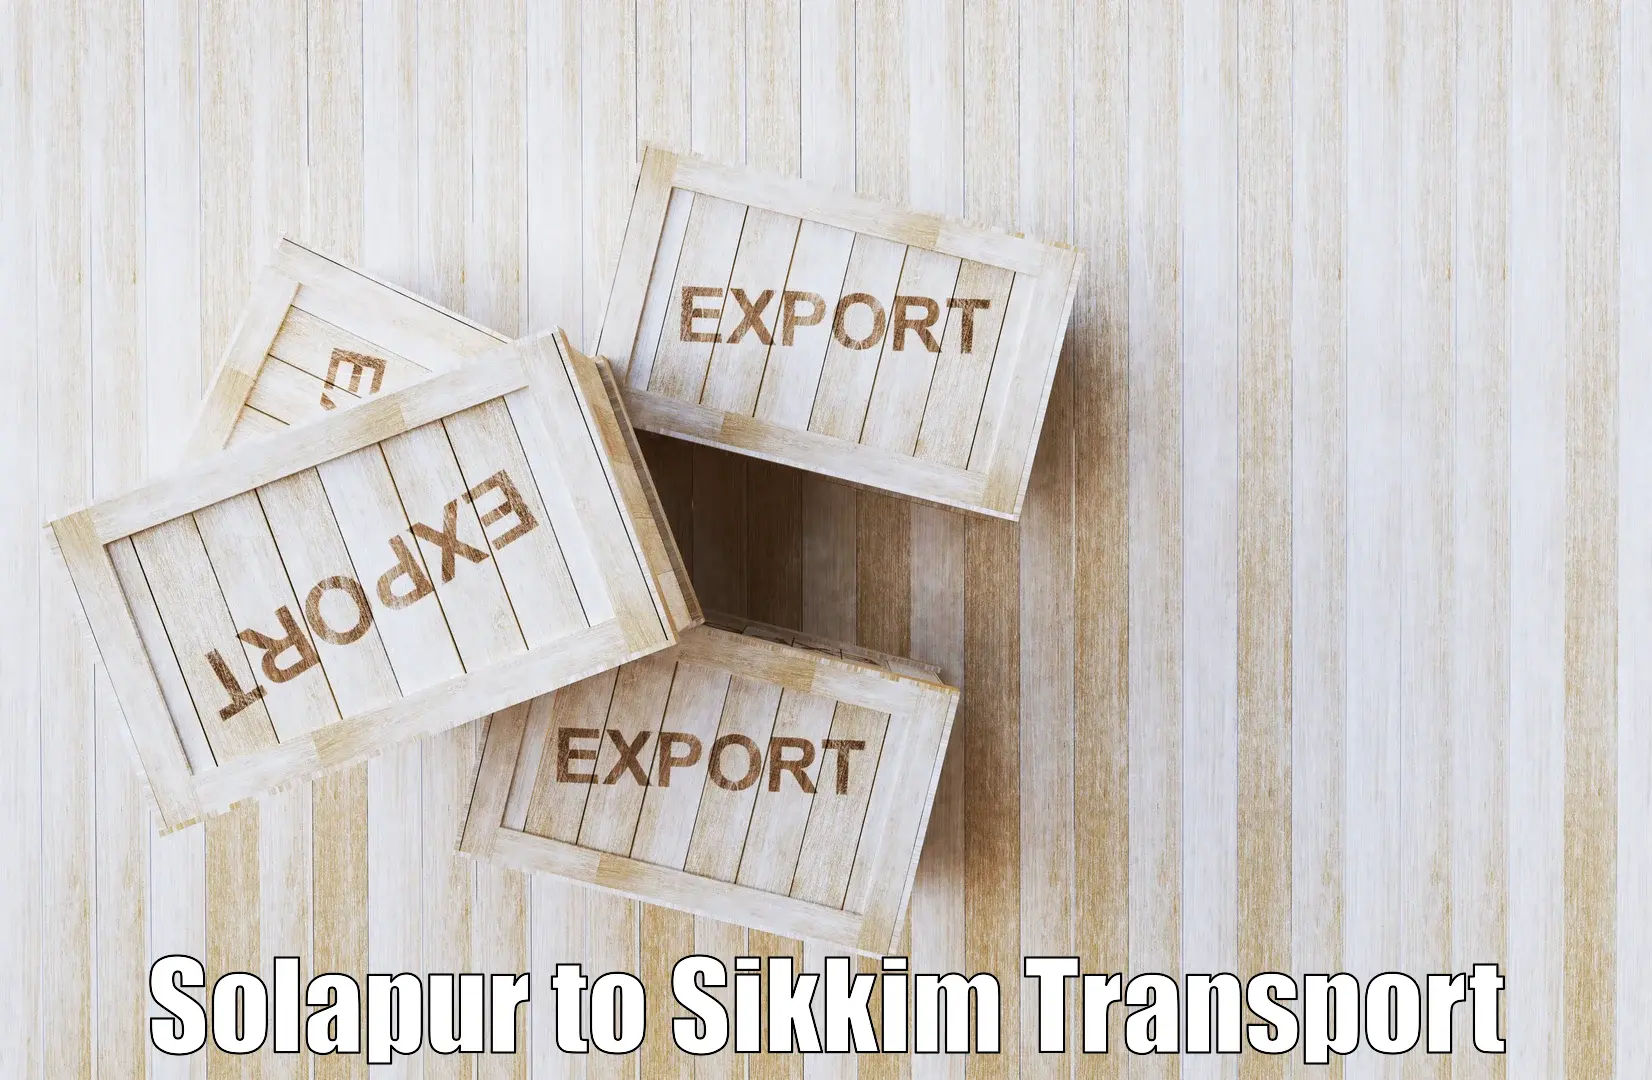 Two wheeler transport services Solapur to Gangtok